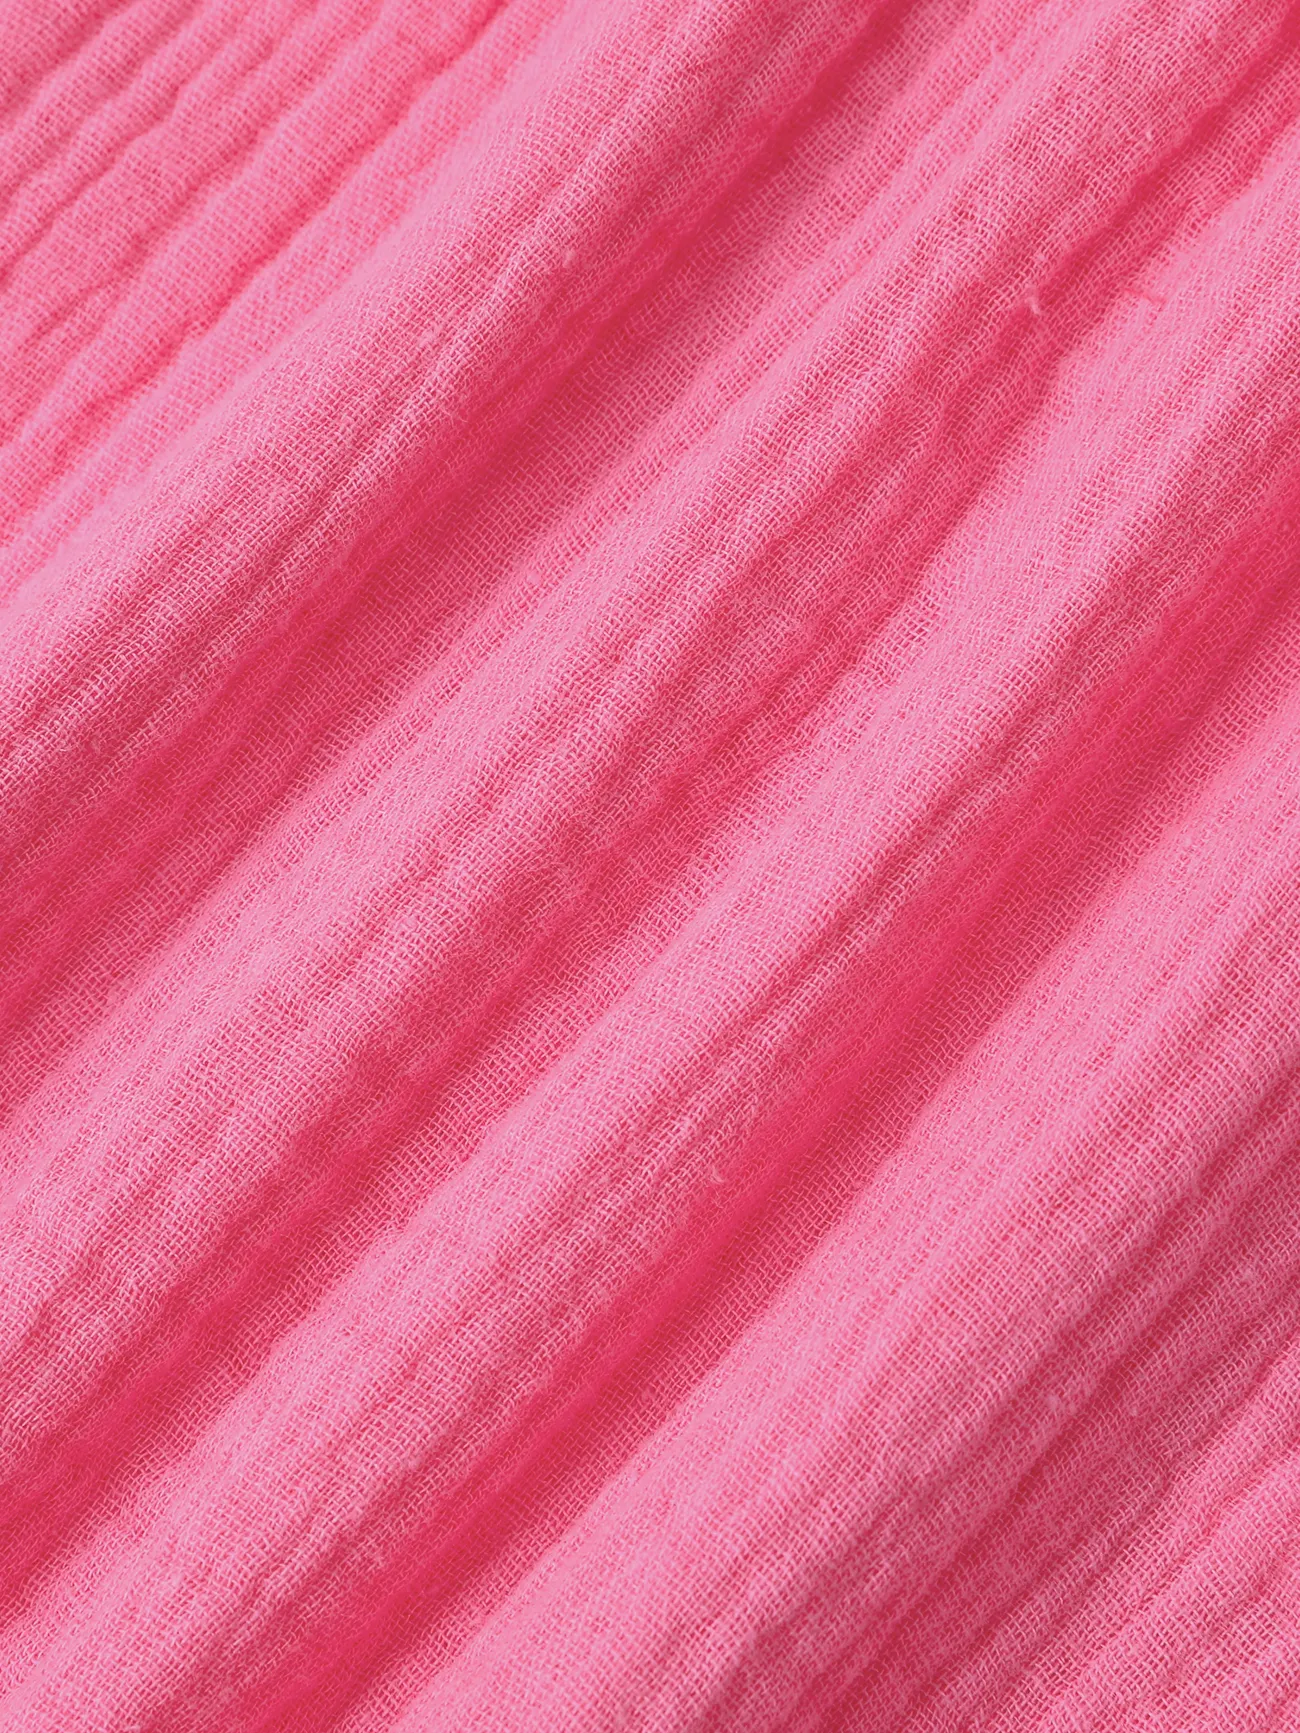 Niñas Pequeñas Dulce Diseño De Correa Colgante Rosa Mameluco De Algodón Rosa Rosado big image 1